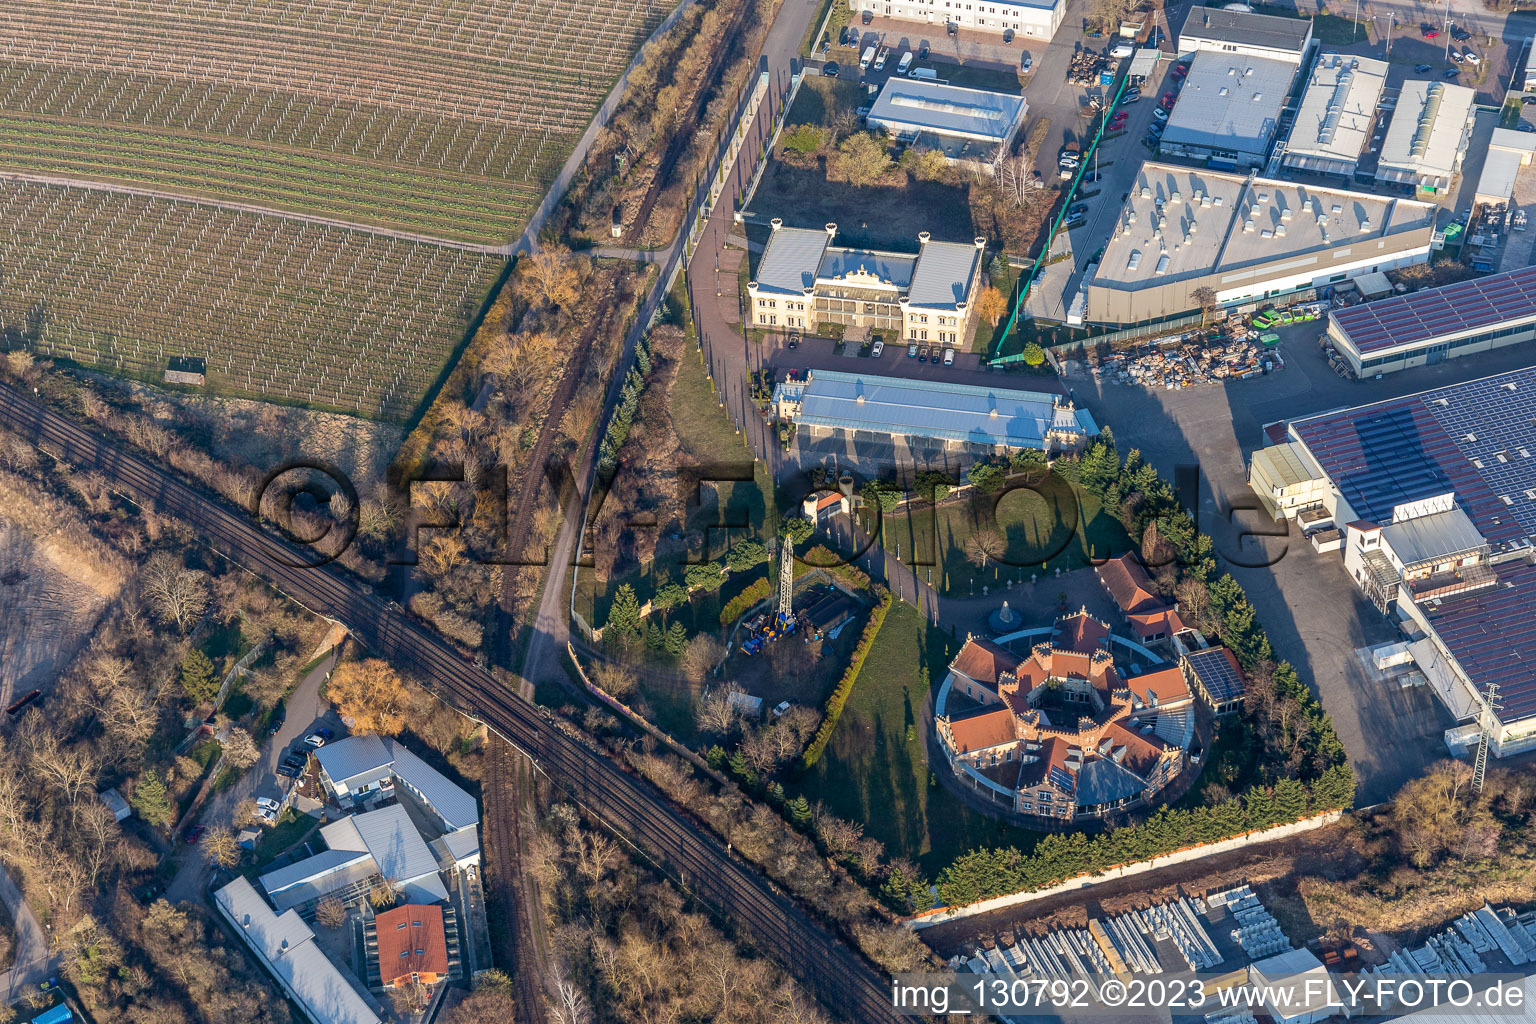 Landau in der Pfalz im Bundesland Rheinland-Pfalz, Deutschland aus der Luft betrachtet